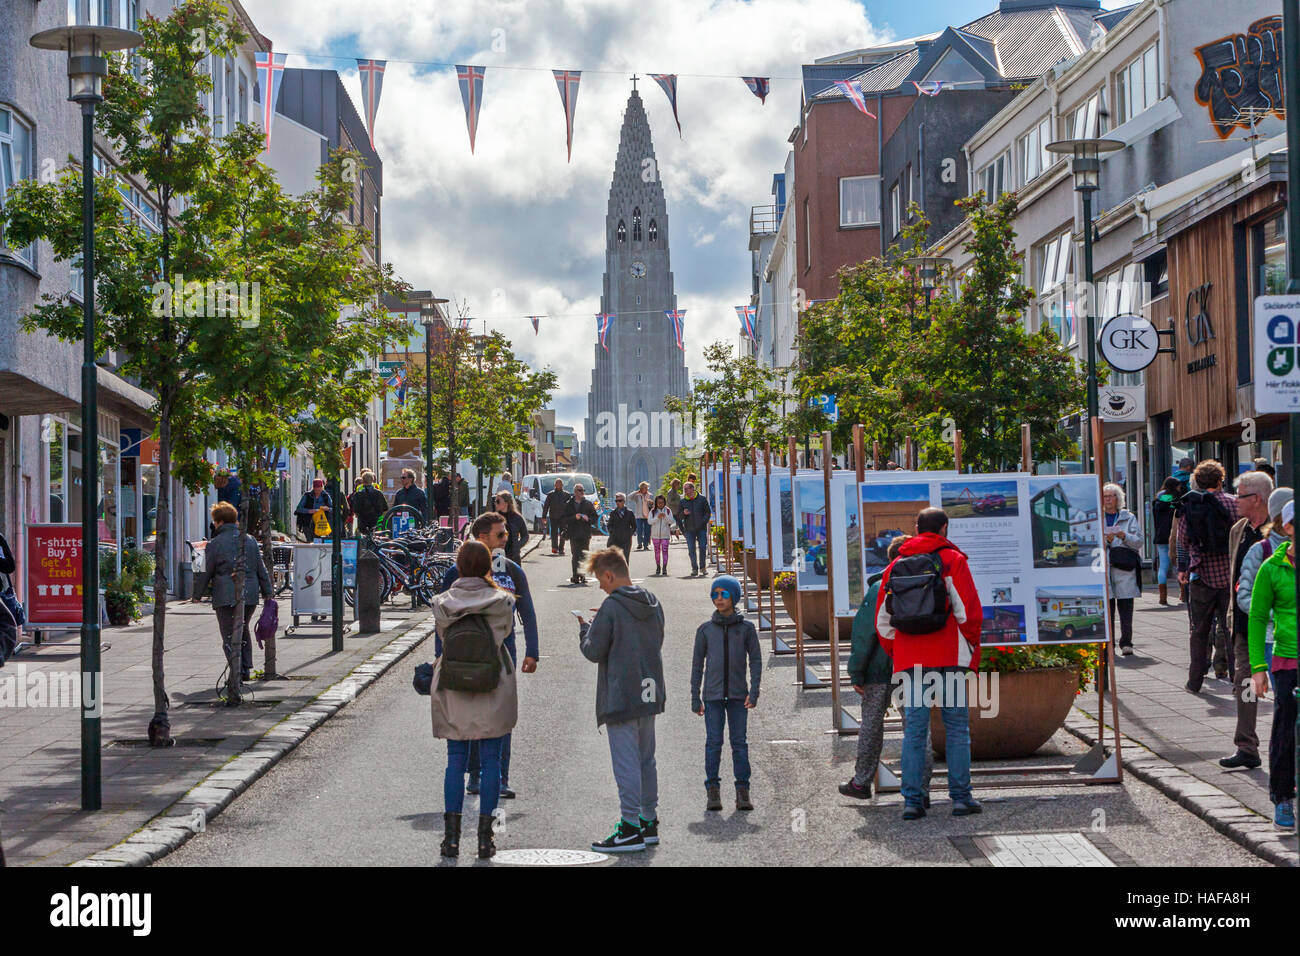 Menschen, Touristen zu Fuß in der Einkaufsstraße in Reykjavik, Island und der lutherischen Kirche Hallgrimskirkja wird gesehen. Stockfoto